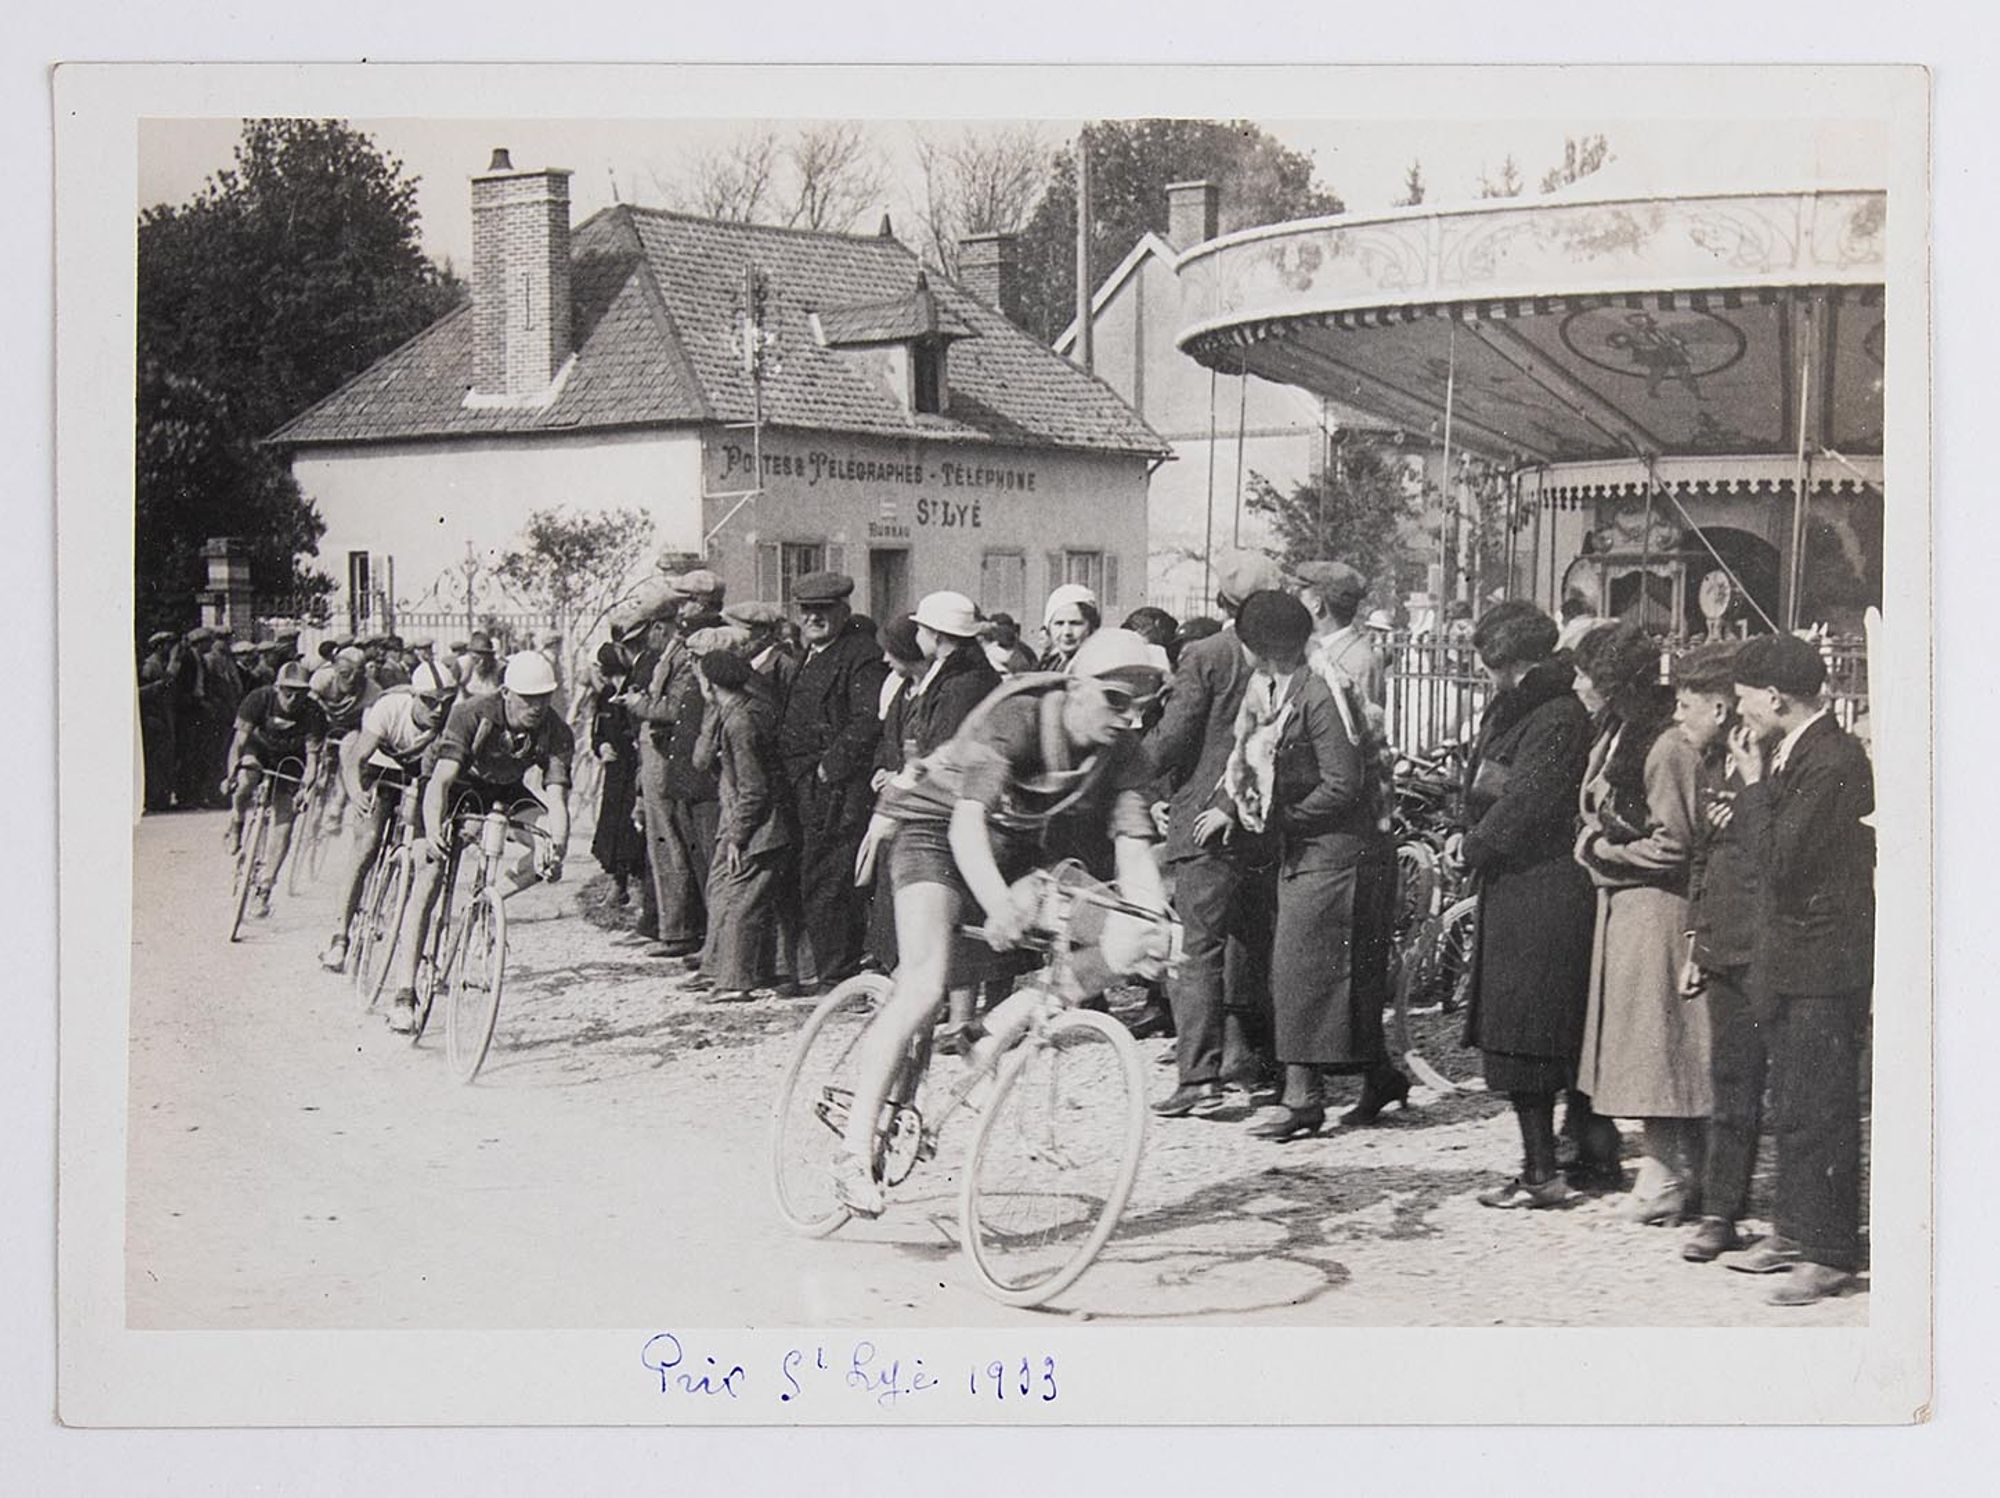 1933. Prix Saint-Lyé. Coureurs cyclistes et spectateurs sur la place de l'église de Saint-Lyé.